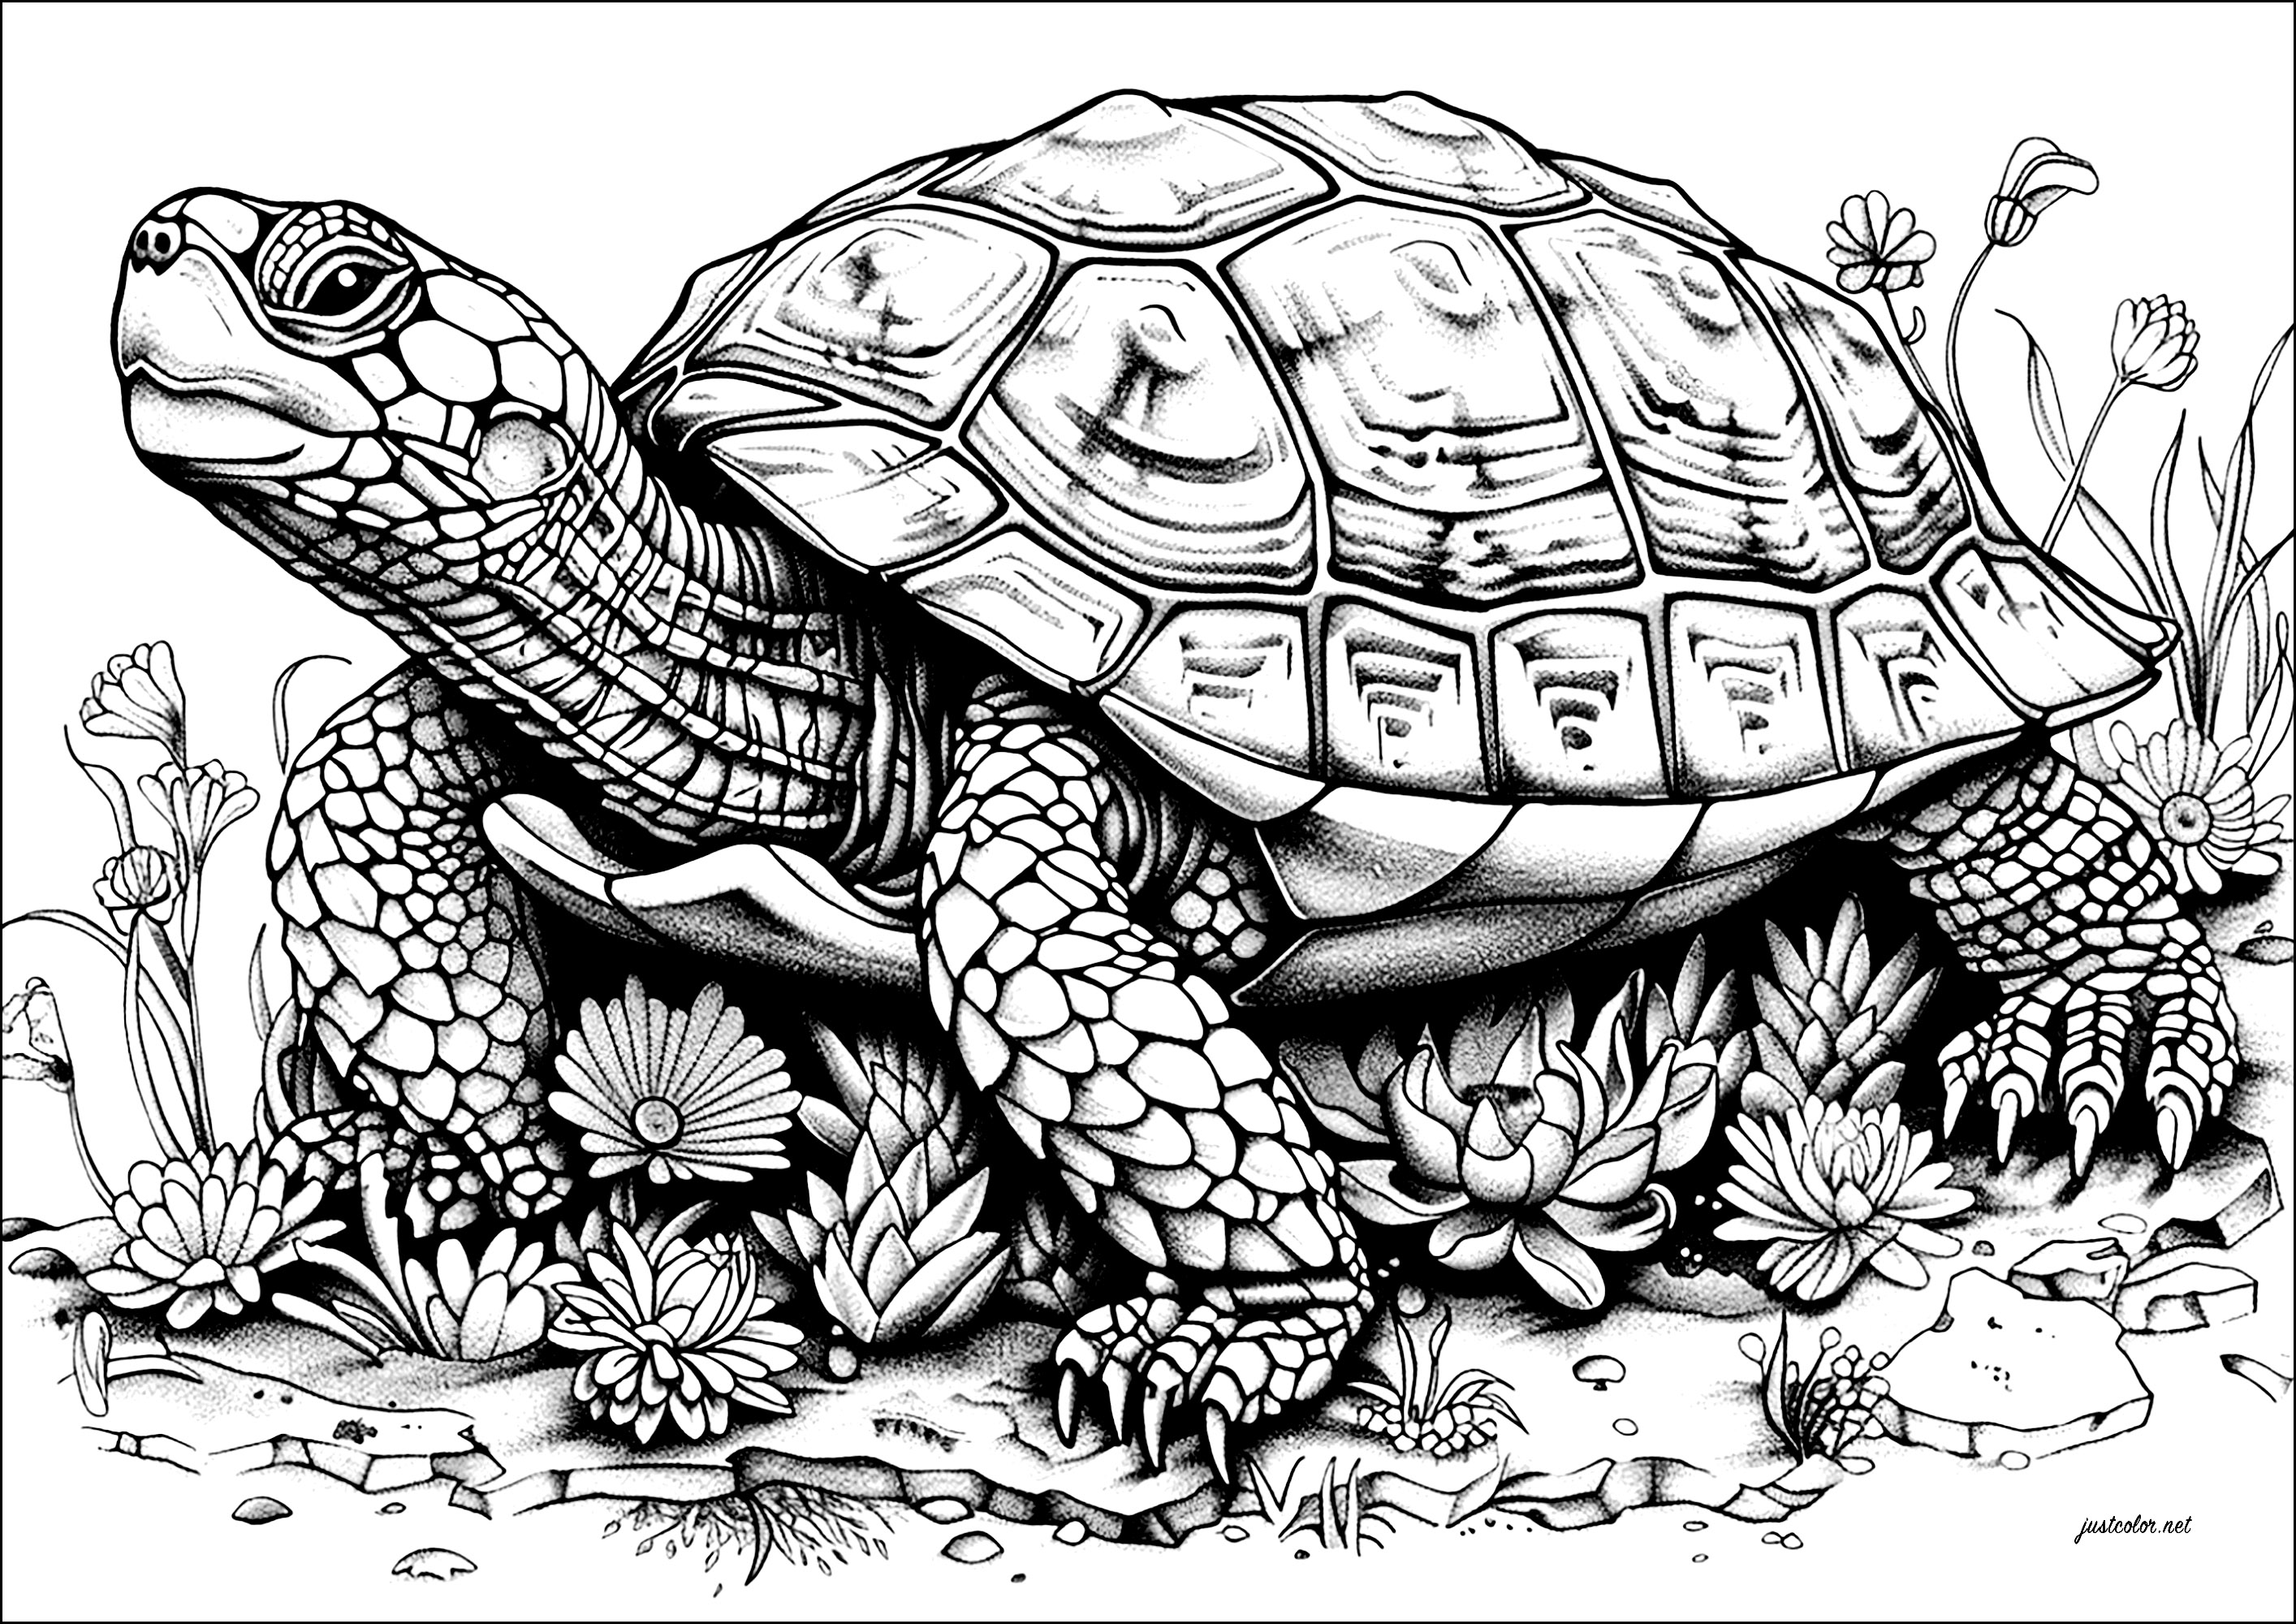 Coloração de uma tartaruga grande e lenta, cheia de pormenores. A cabeça desta tartaruga é encimada por uma carapaça impressionante, decorada com padrões intrincados que vais gostar de colorir.Avança lentamente, como se carregasse o peso do mundo às costas.